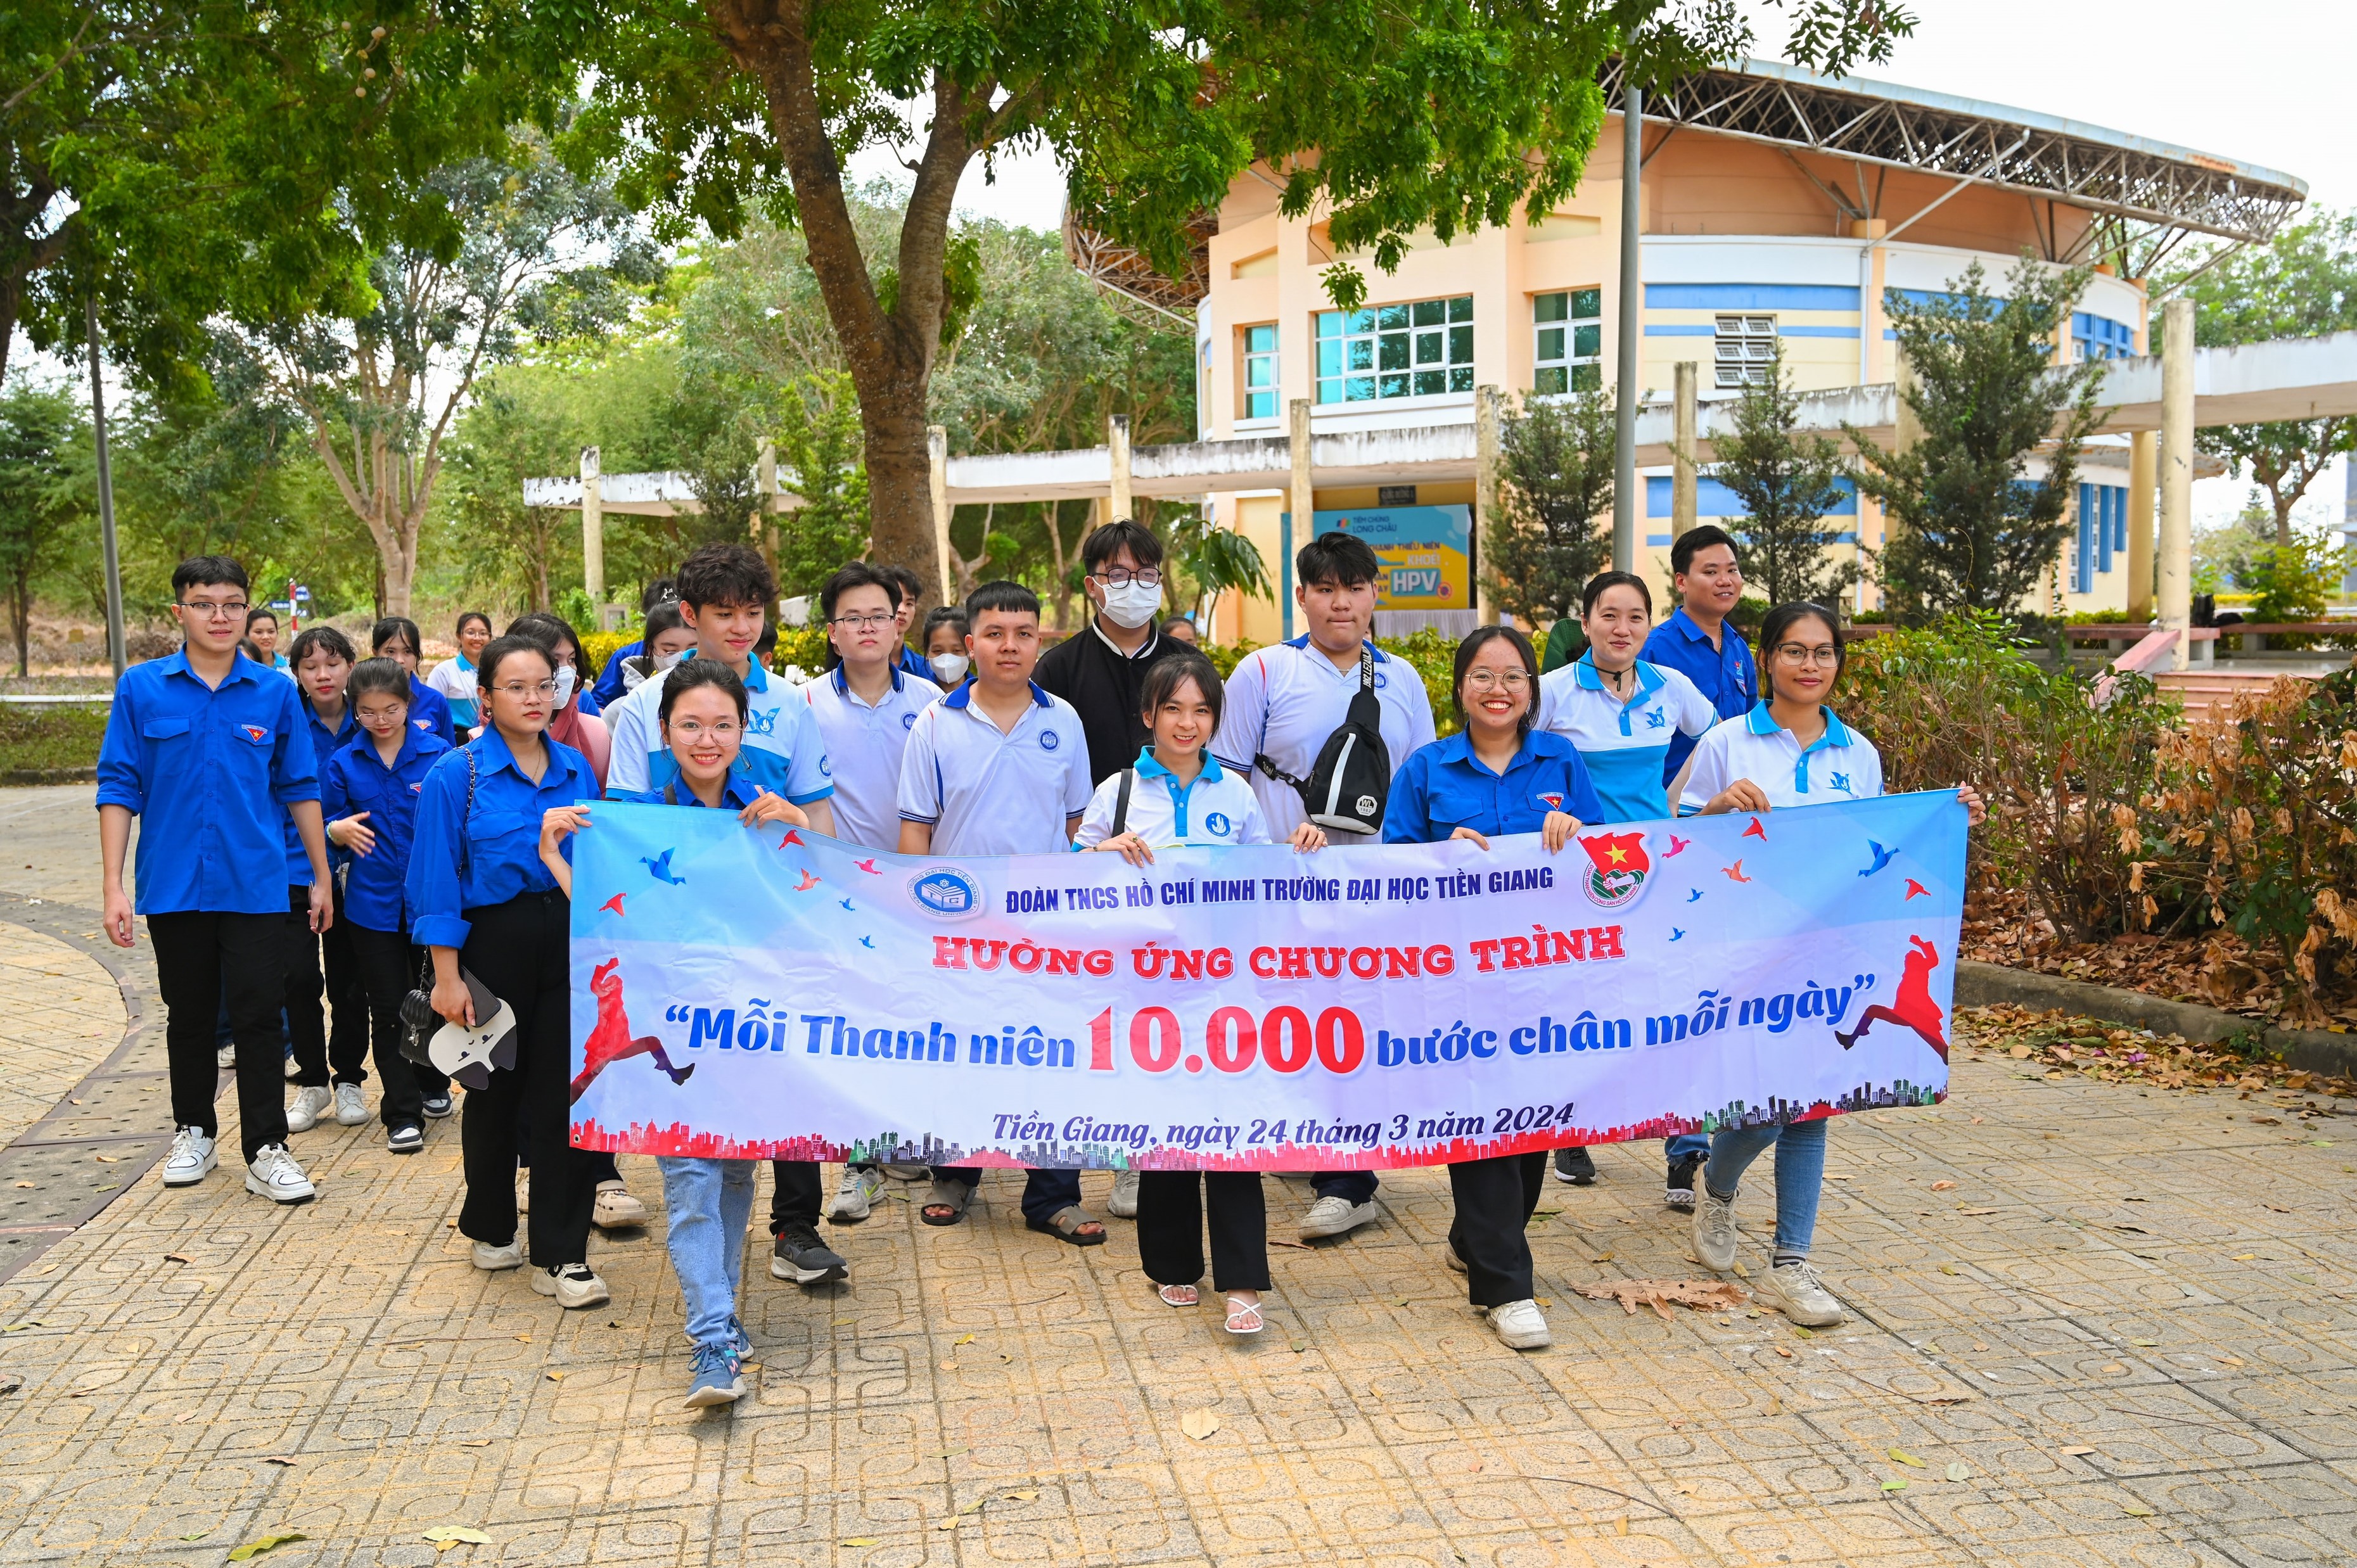 Đoàn Trường Đại học Tiền Giang: Phát động hưởng ứng Chương trình “Mỗi thanh niên 10.000 bước chân mỗi ngày”